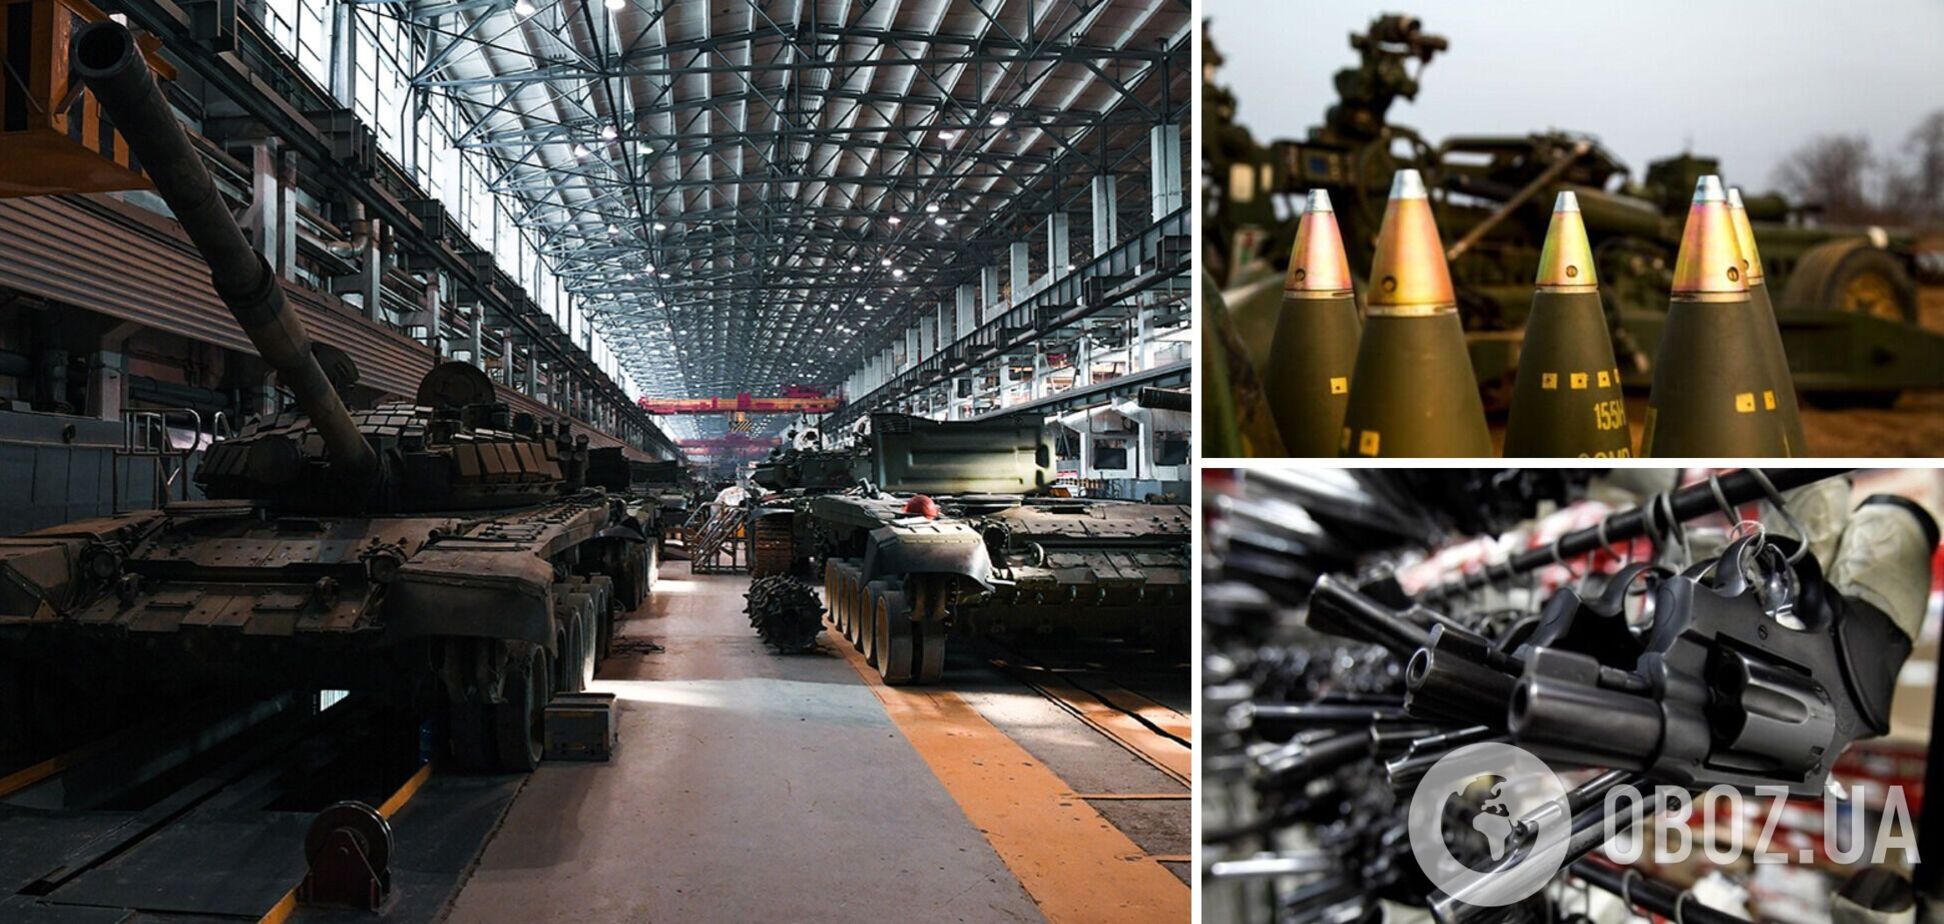 Продажи оружия в мире демонстрируют рост седьмой год подряд, но вторжение РФ в Украину вызвало проблемы – SIPRI